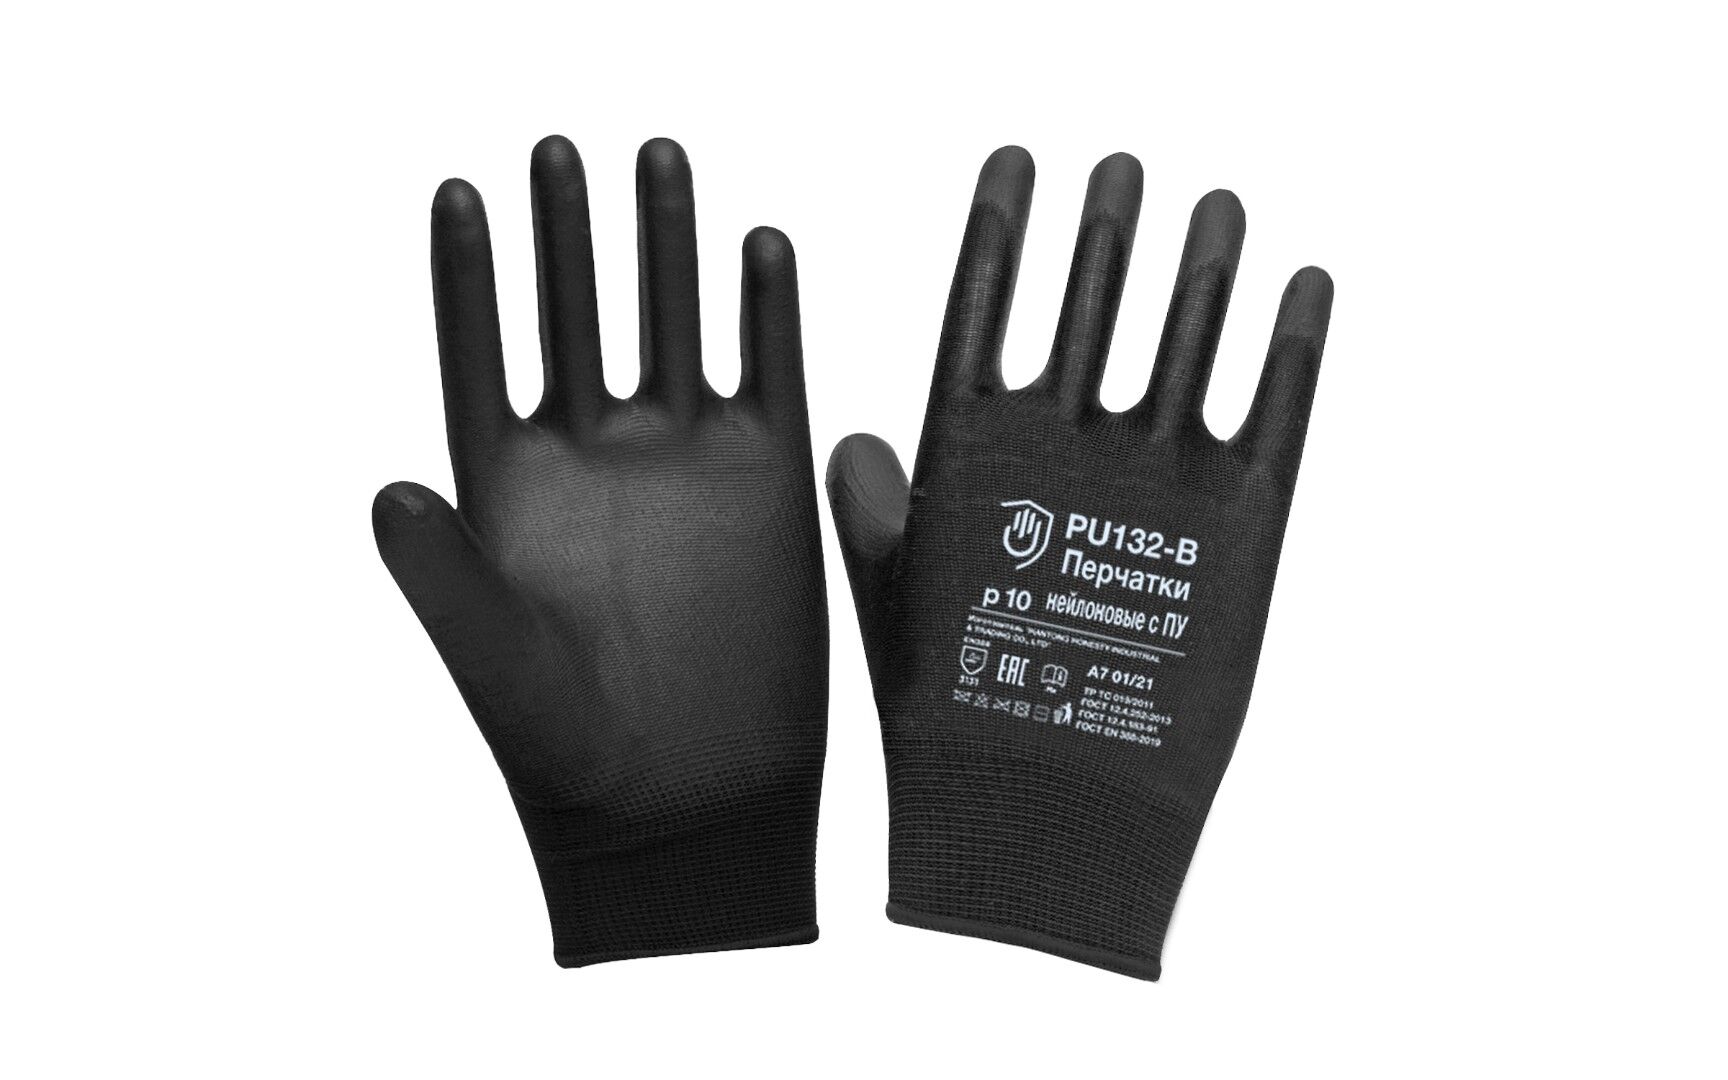 Перчатки нейлоновые с ПУ (PU132-B), нейлоновая основа, полиуретановое покрытие, частичный облив, цвет черный